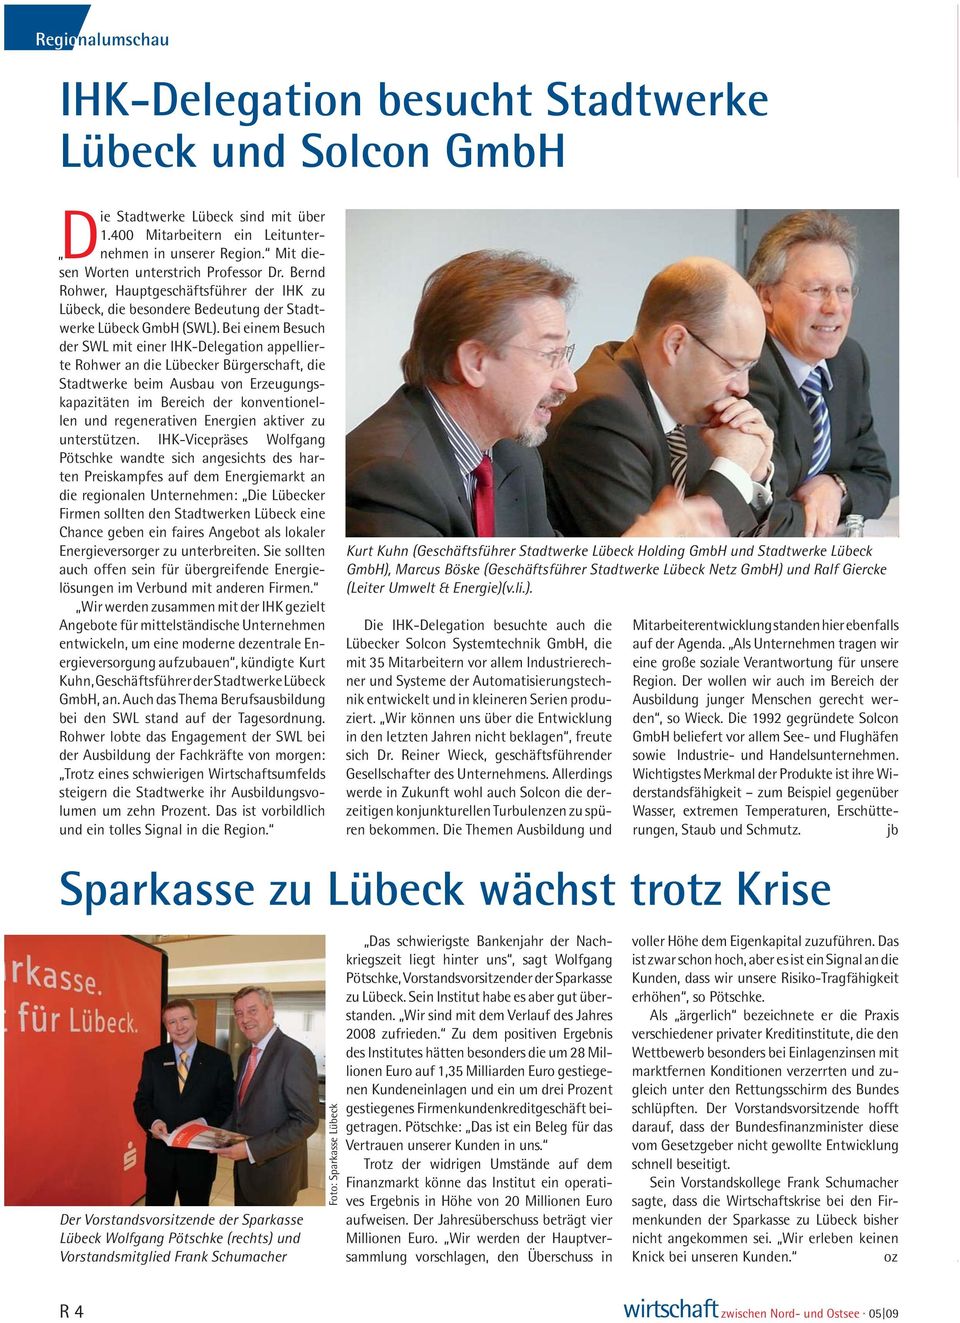 Bei einem Besuch der SWL mit einer IHK-Delegation appellierte Rohwer an die Lübecker Bürgerschaft, die Stadtwerke beim Ausbau von Erzeugungskapazitäten im Bereich der konventionellen und